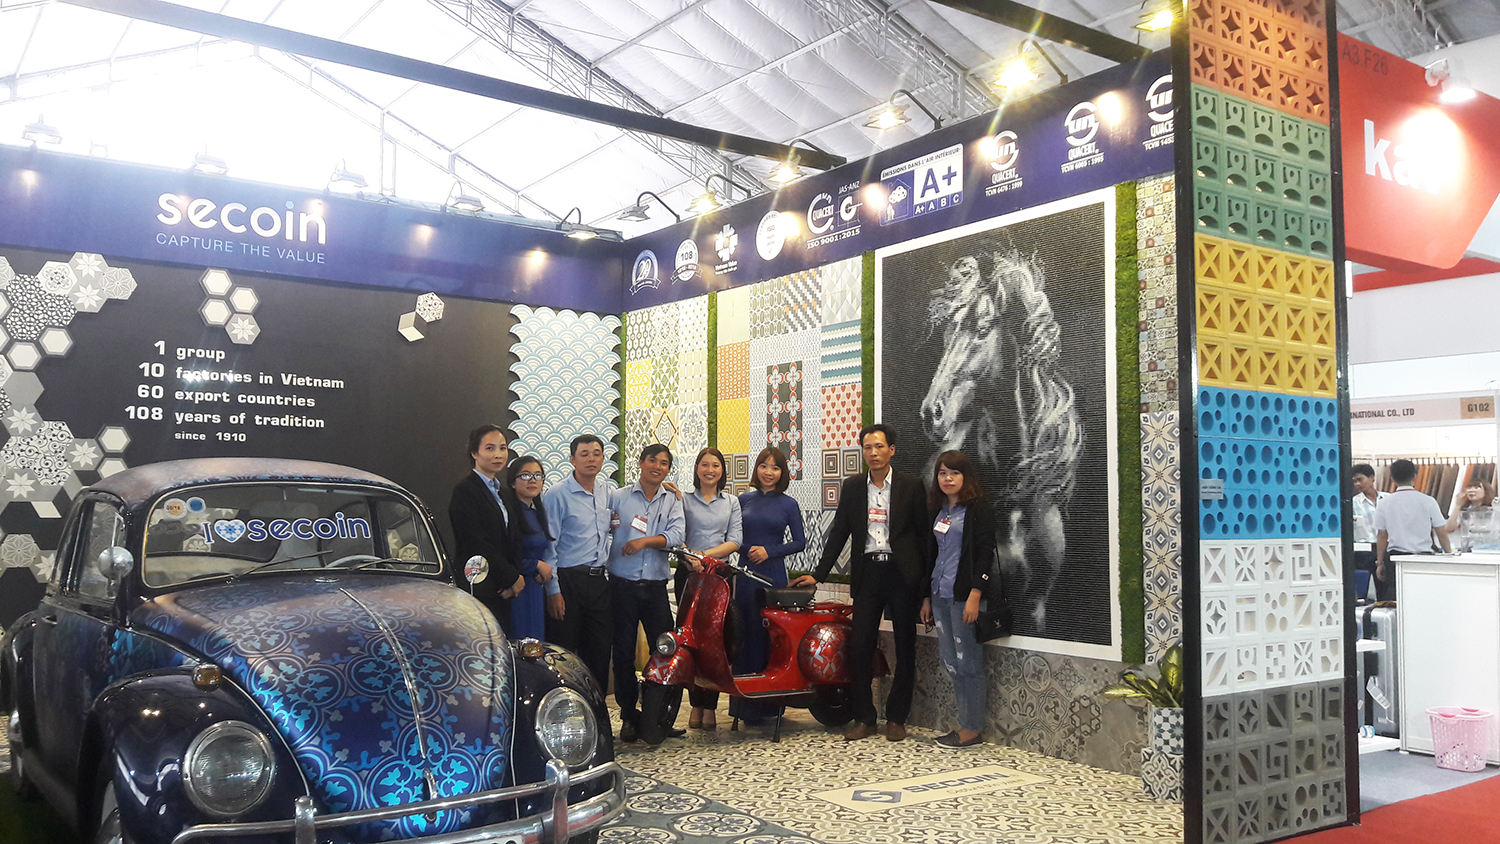 Secoin tham gia Hội chợ VIFA EXPO Sài Gòn 2018